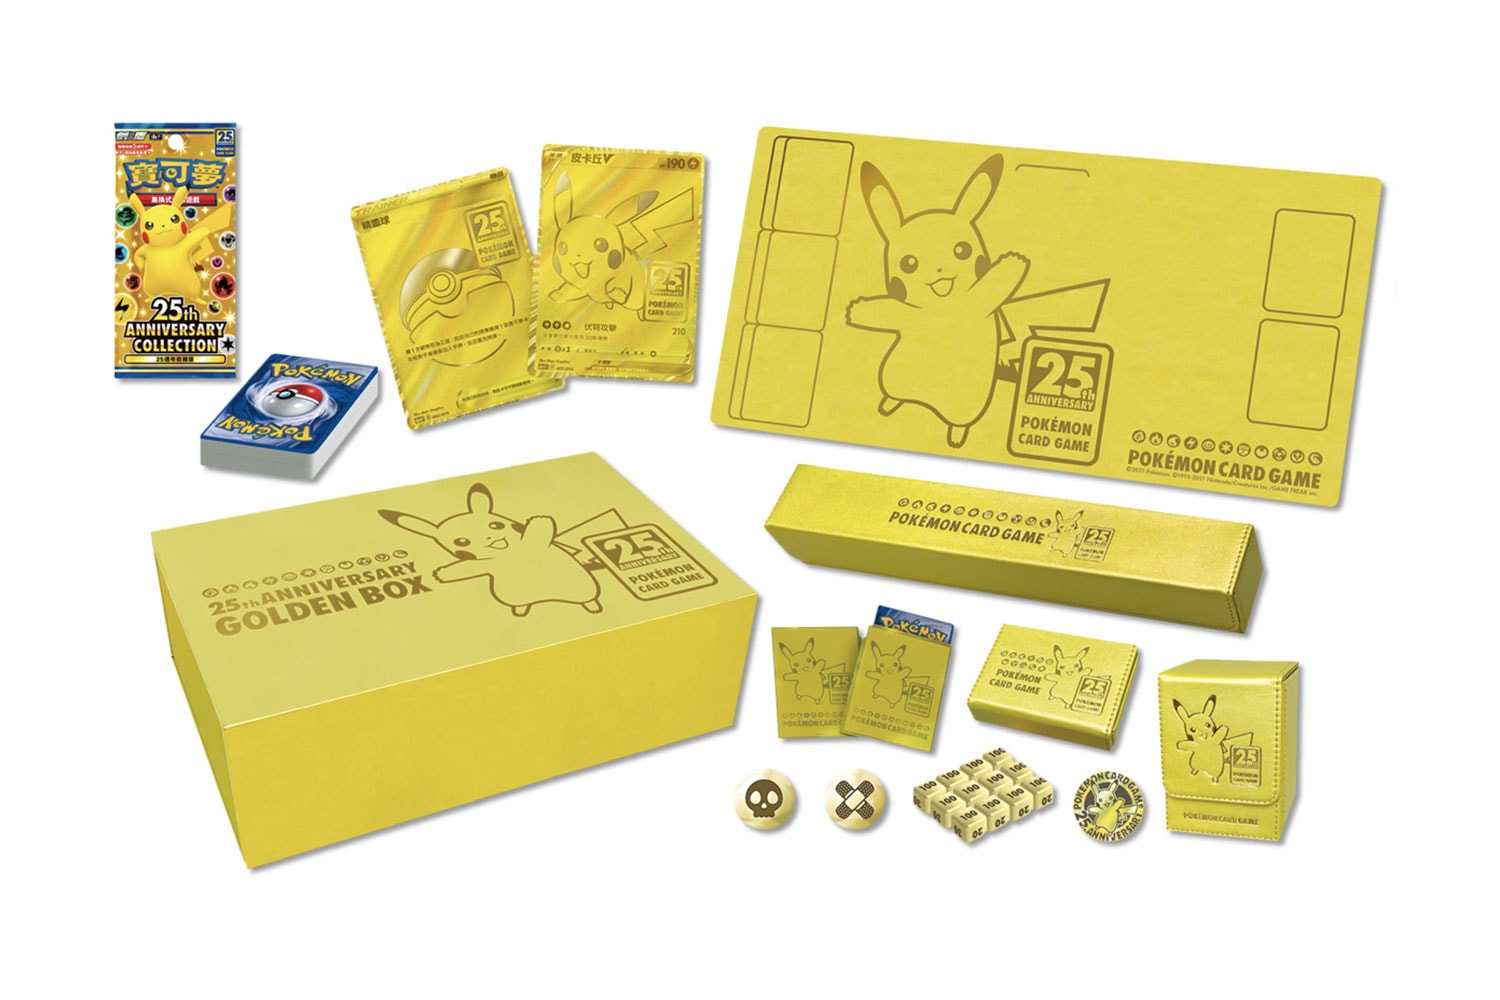 線上正式開賣｜HYPEBEAST x Pokémon TCG 25 週年聯乘系列